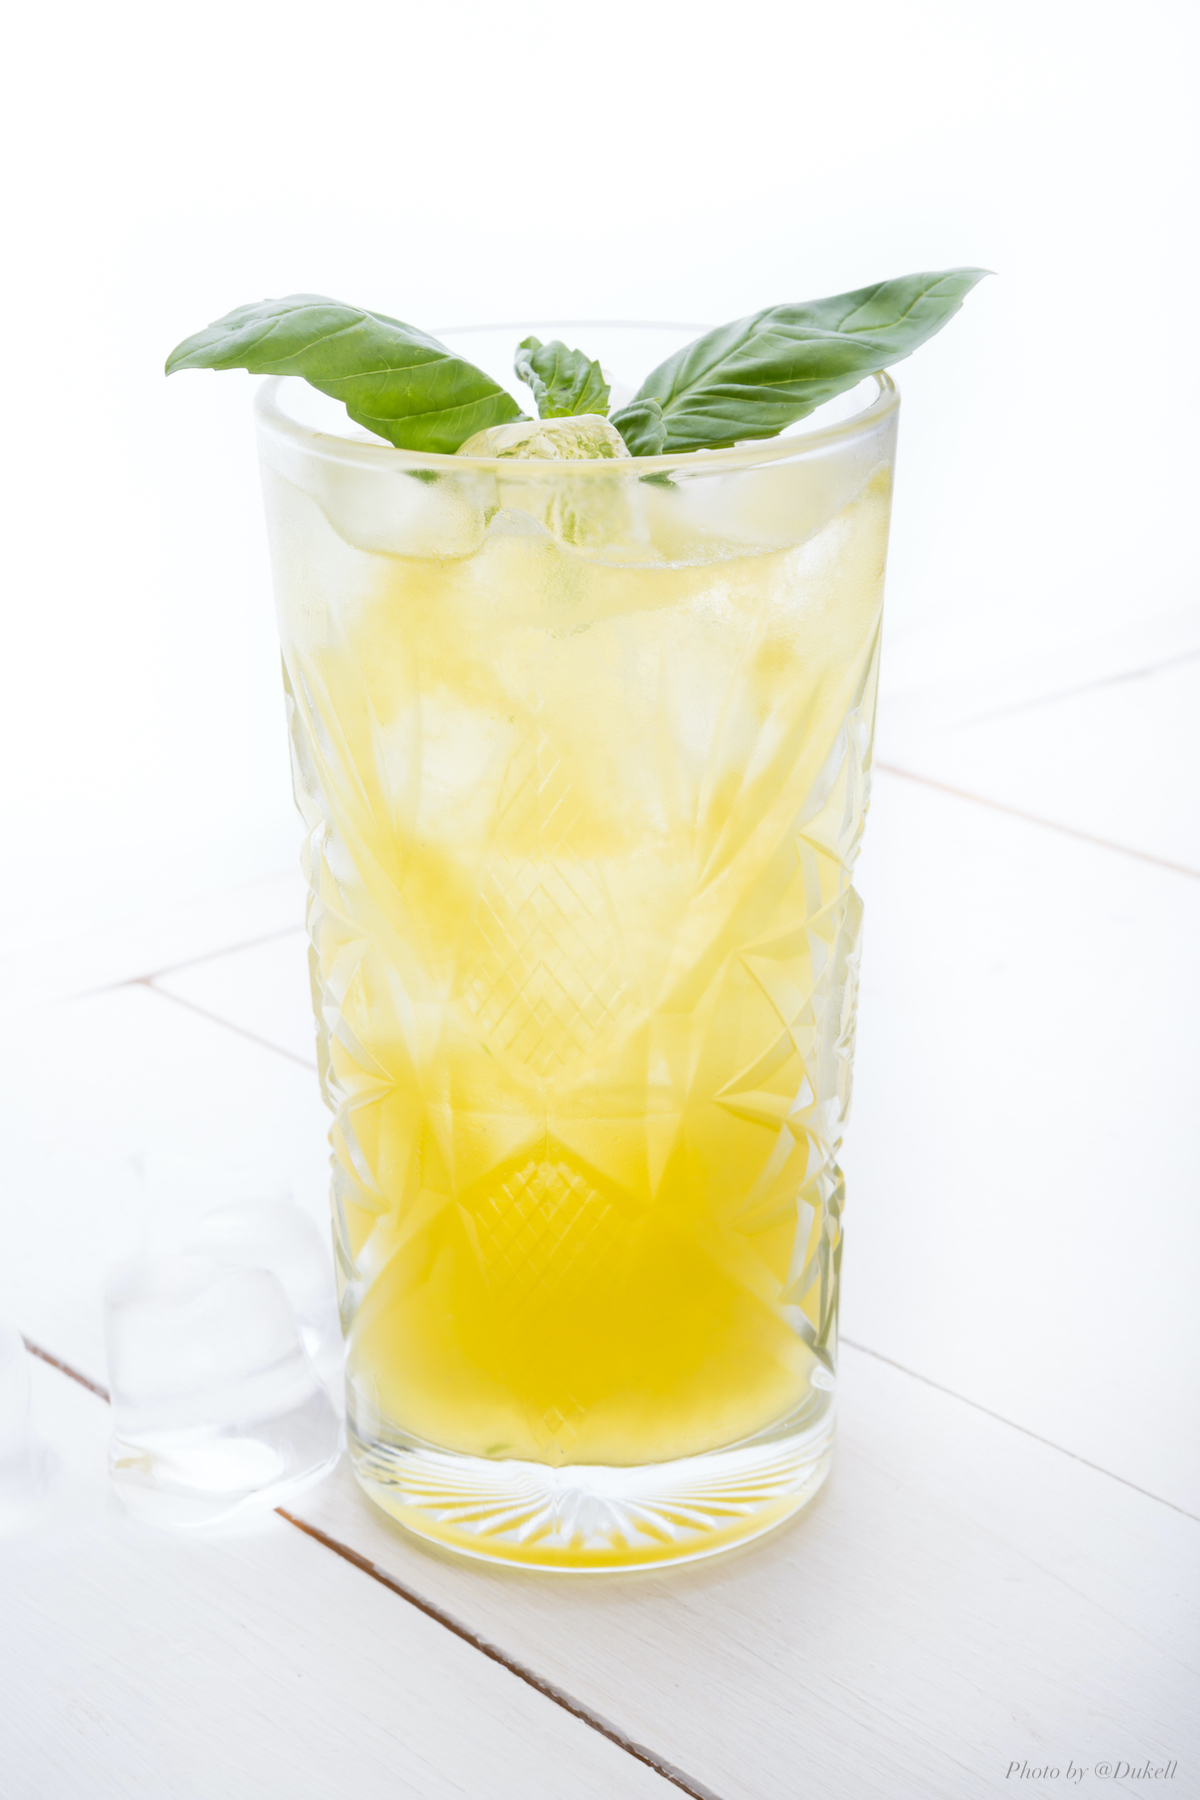 Sarah Morrissey's Gin & Tonic Cocktail Recipe